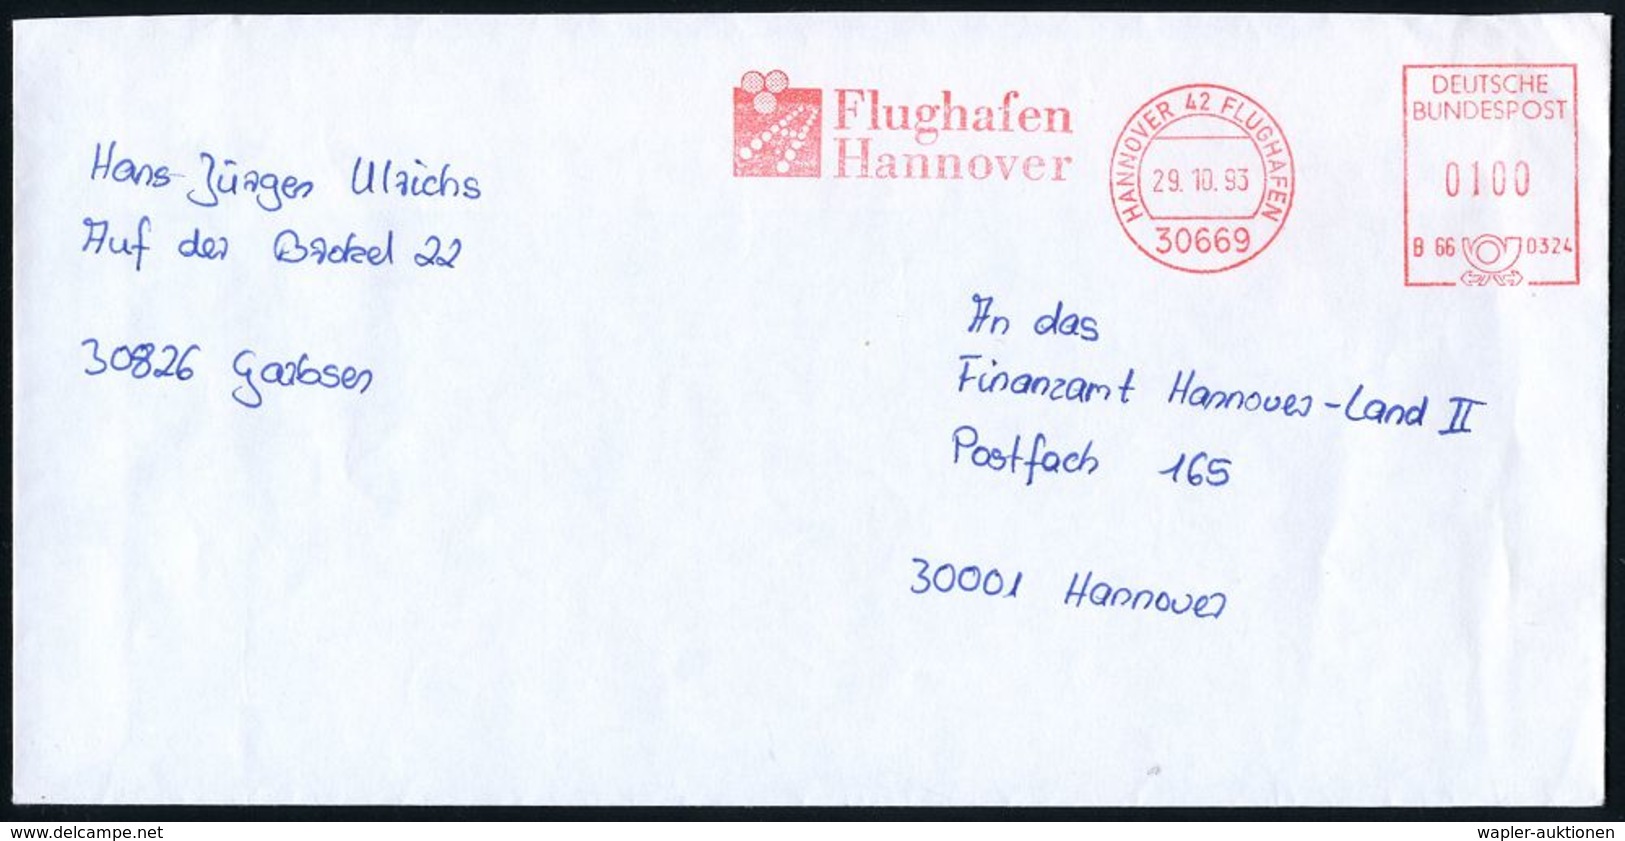 FLUGHAFEN / FLUGHAFEN-POSTÄMTER : 3000 #bzw.# 30669 HANNOVER 42-FLUGHAFEN/ B66 0324/ Flughafen/ Hannover 1993 (26.2./29. - Other (Air)